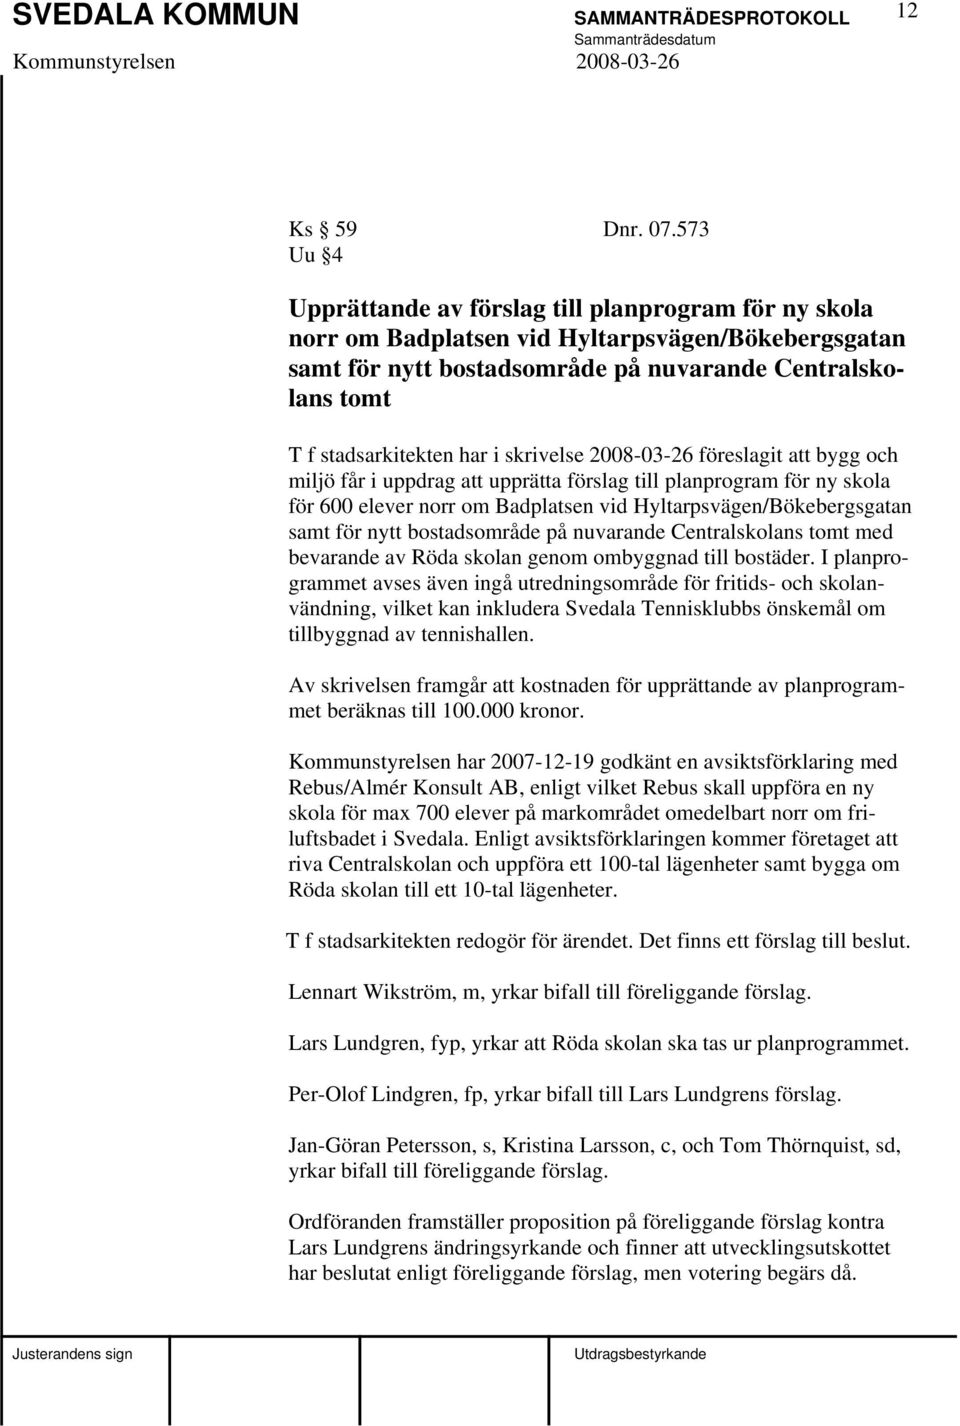 i skrivelse 2008-03-26 föreslagit att bygg och miljö får i uppdrag att upprätta förslag till planprogram för ny skola för 600 elever norr om Badplatsen vid Hyltarpsvägen/Bökebergsgatan samt för nytt